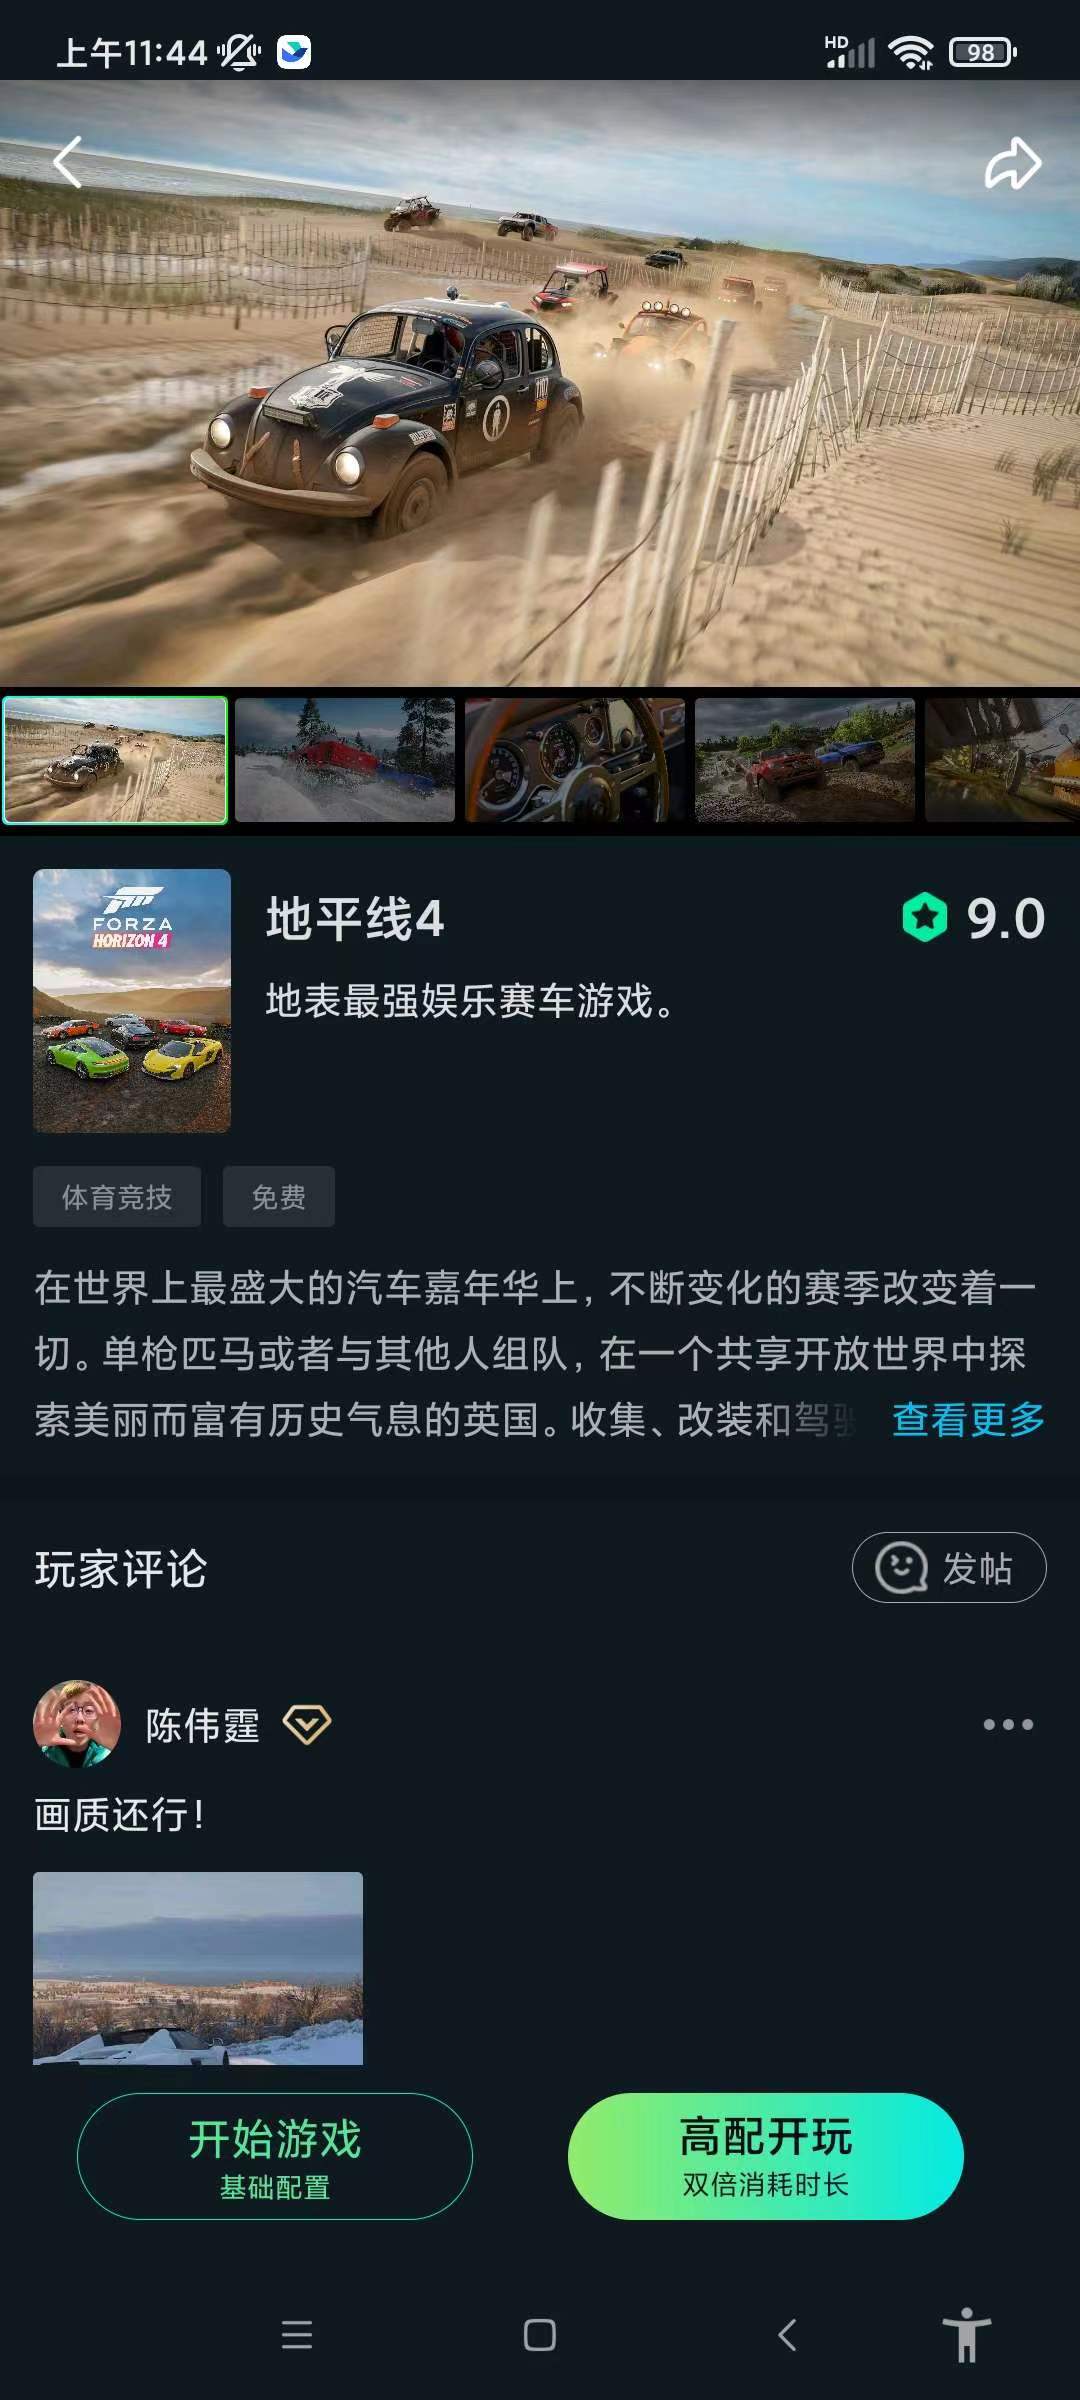 YOWA云游戏2.8.15解锁会员手机畅玩steam 屠城辅助网www.tcfz1.com7427